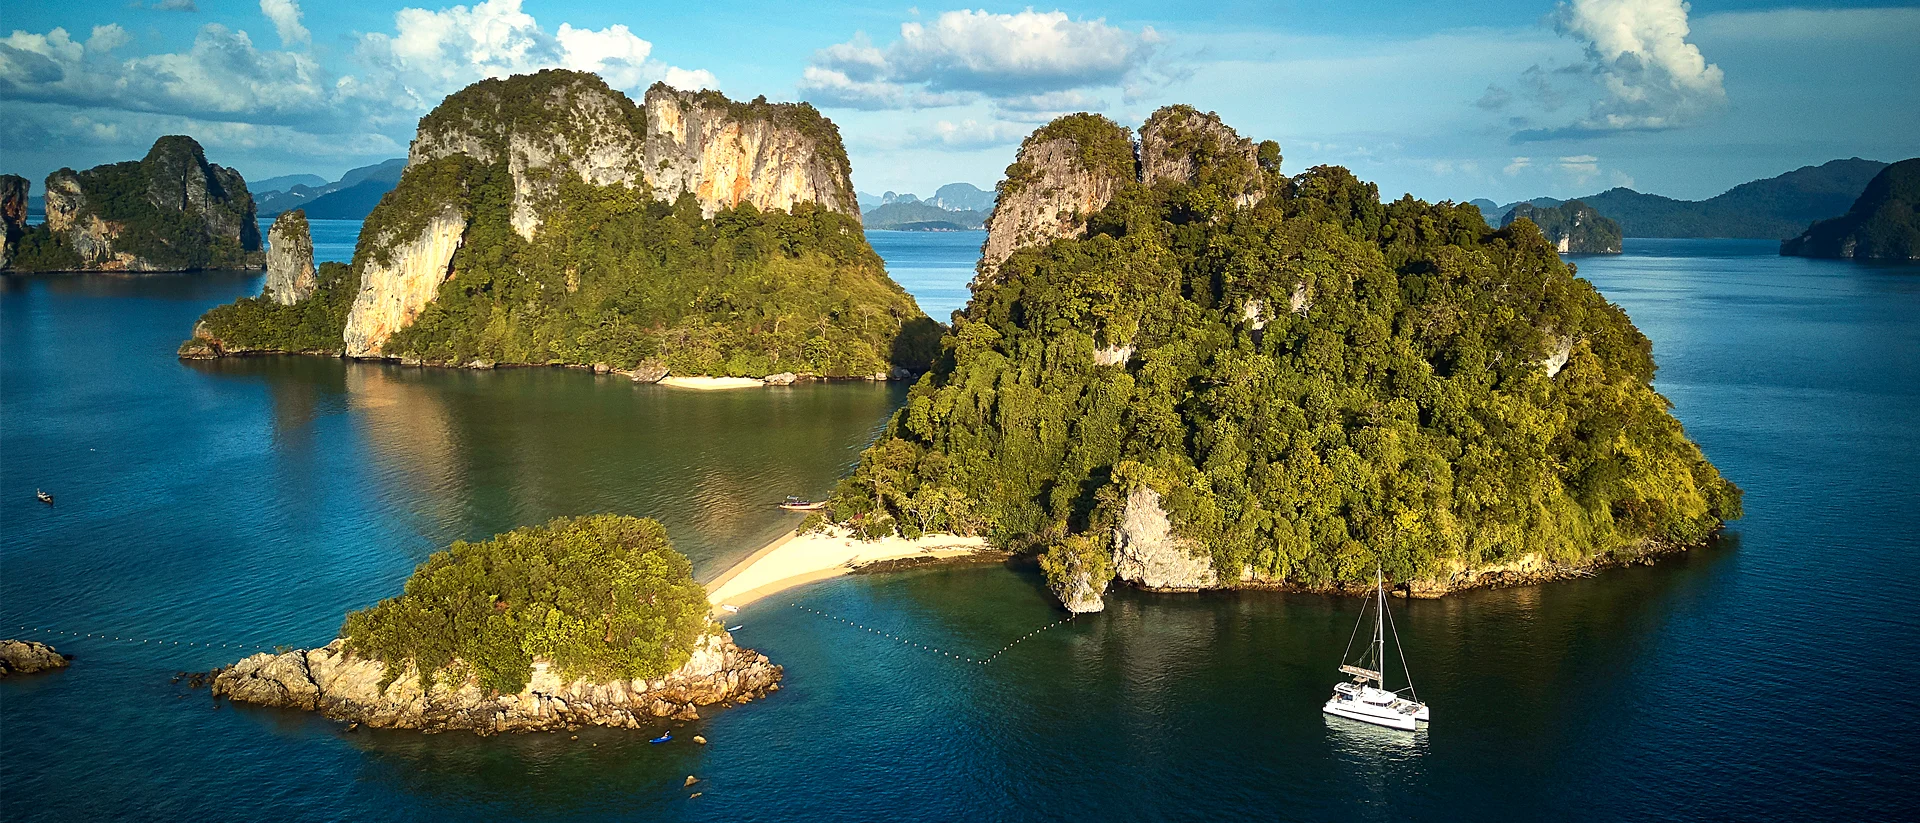 Bateaux voguant sur fond d'île et de rochers imposants en Thaïlande